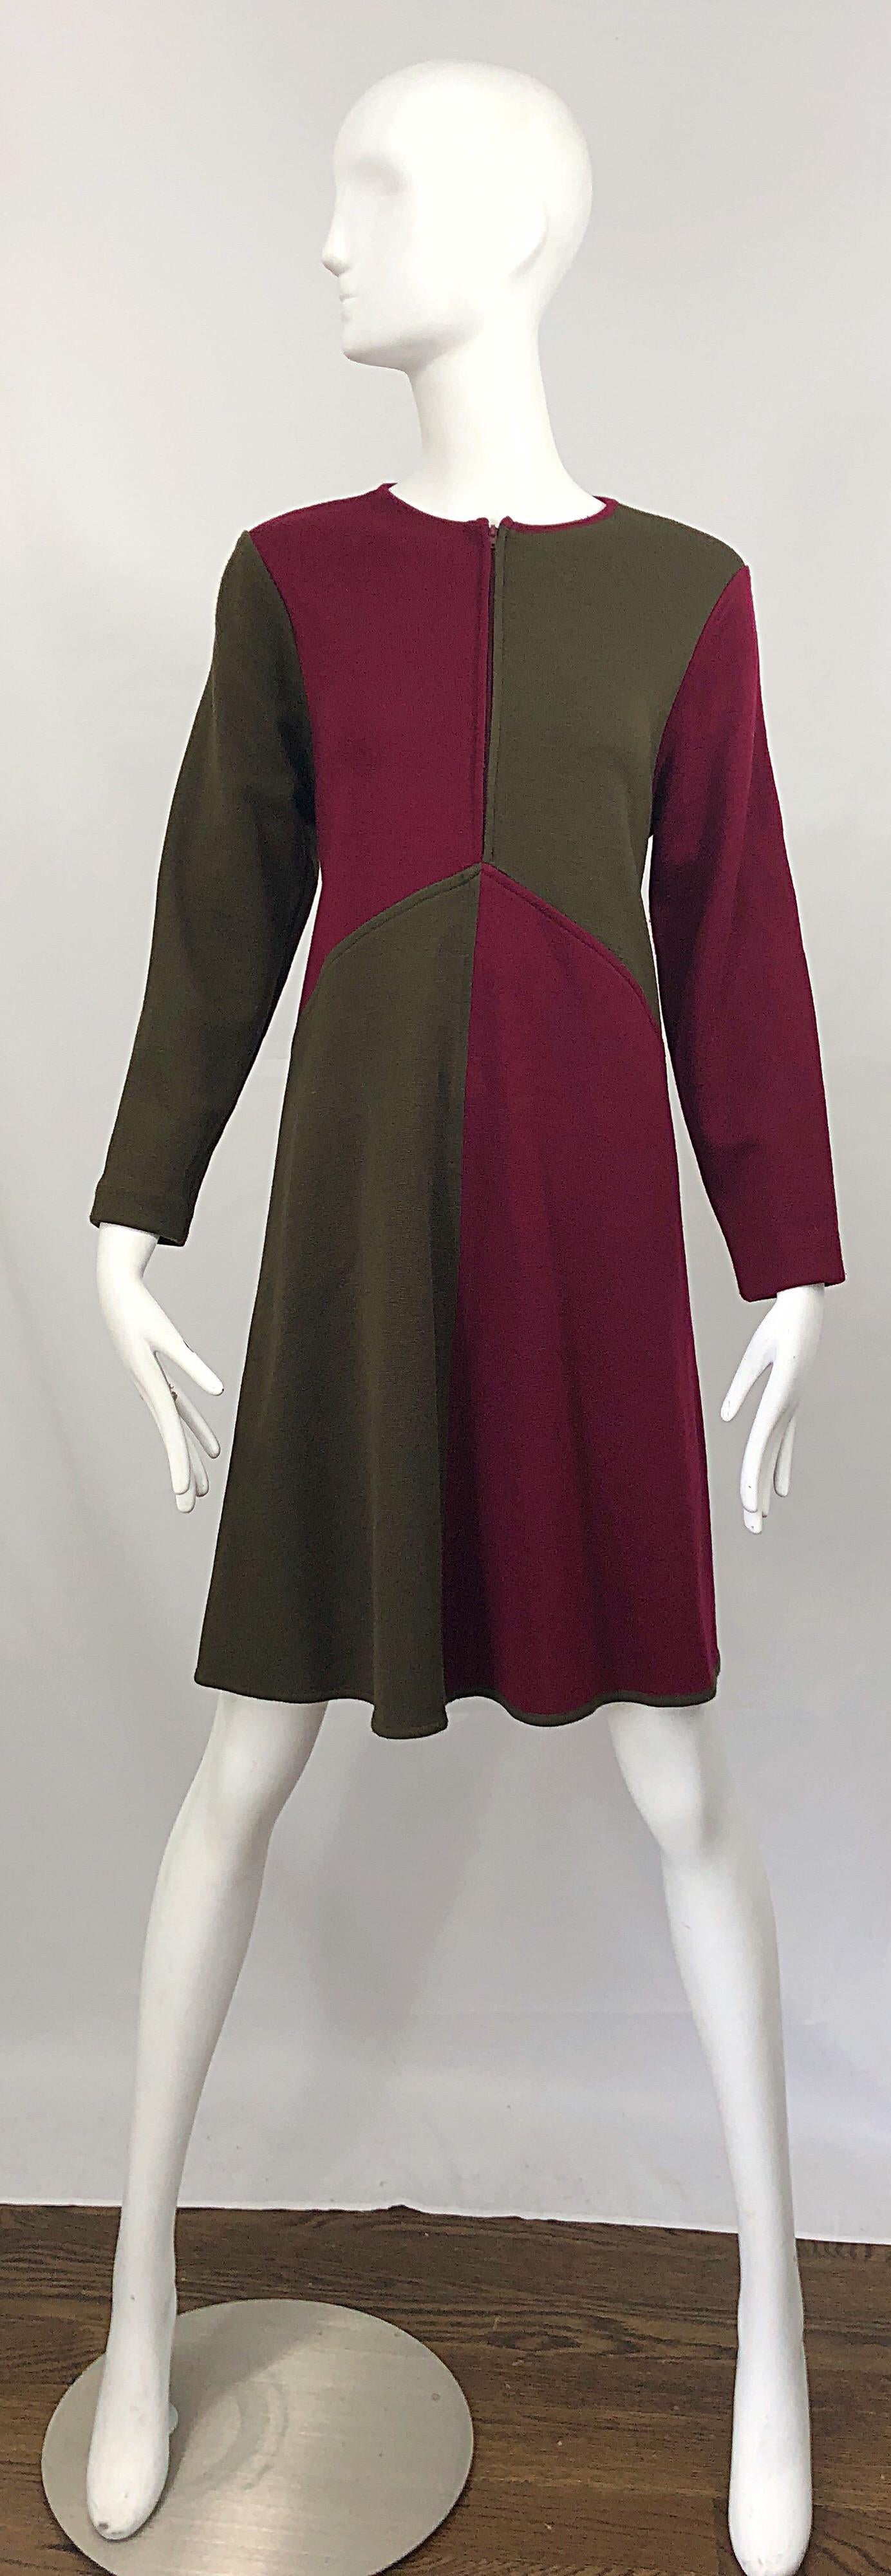 Vintage Harve Benard 1960s Style Maroon Burgundy + Brown Knit Wool Swing Dress For Sale 7